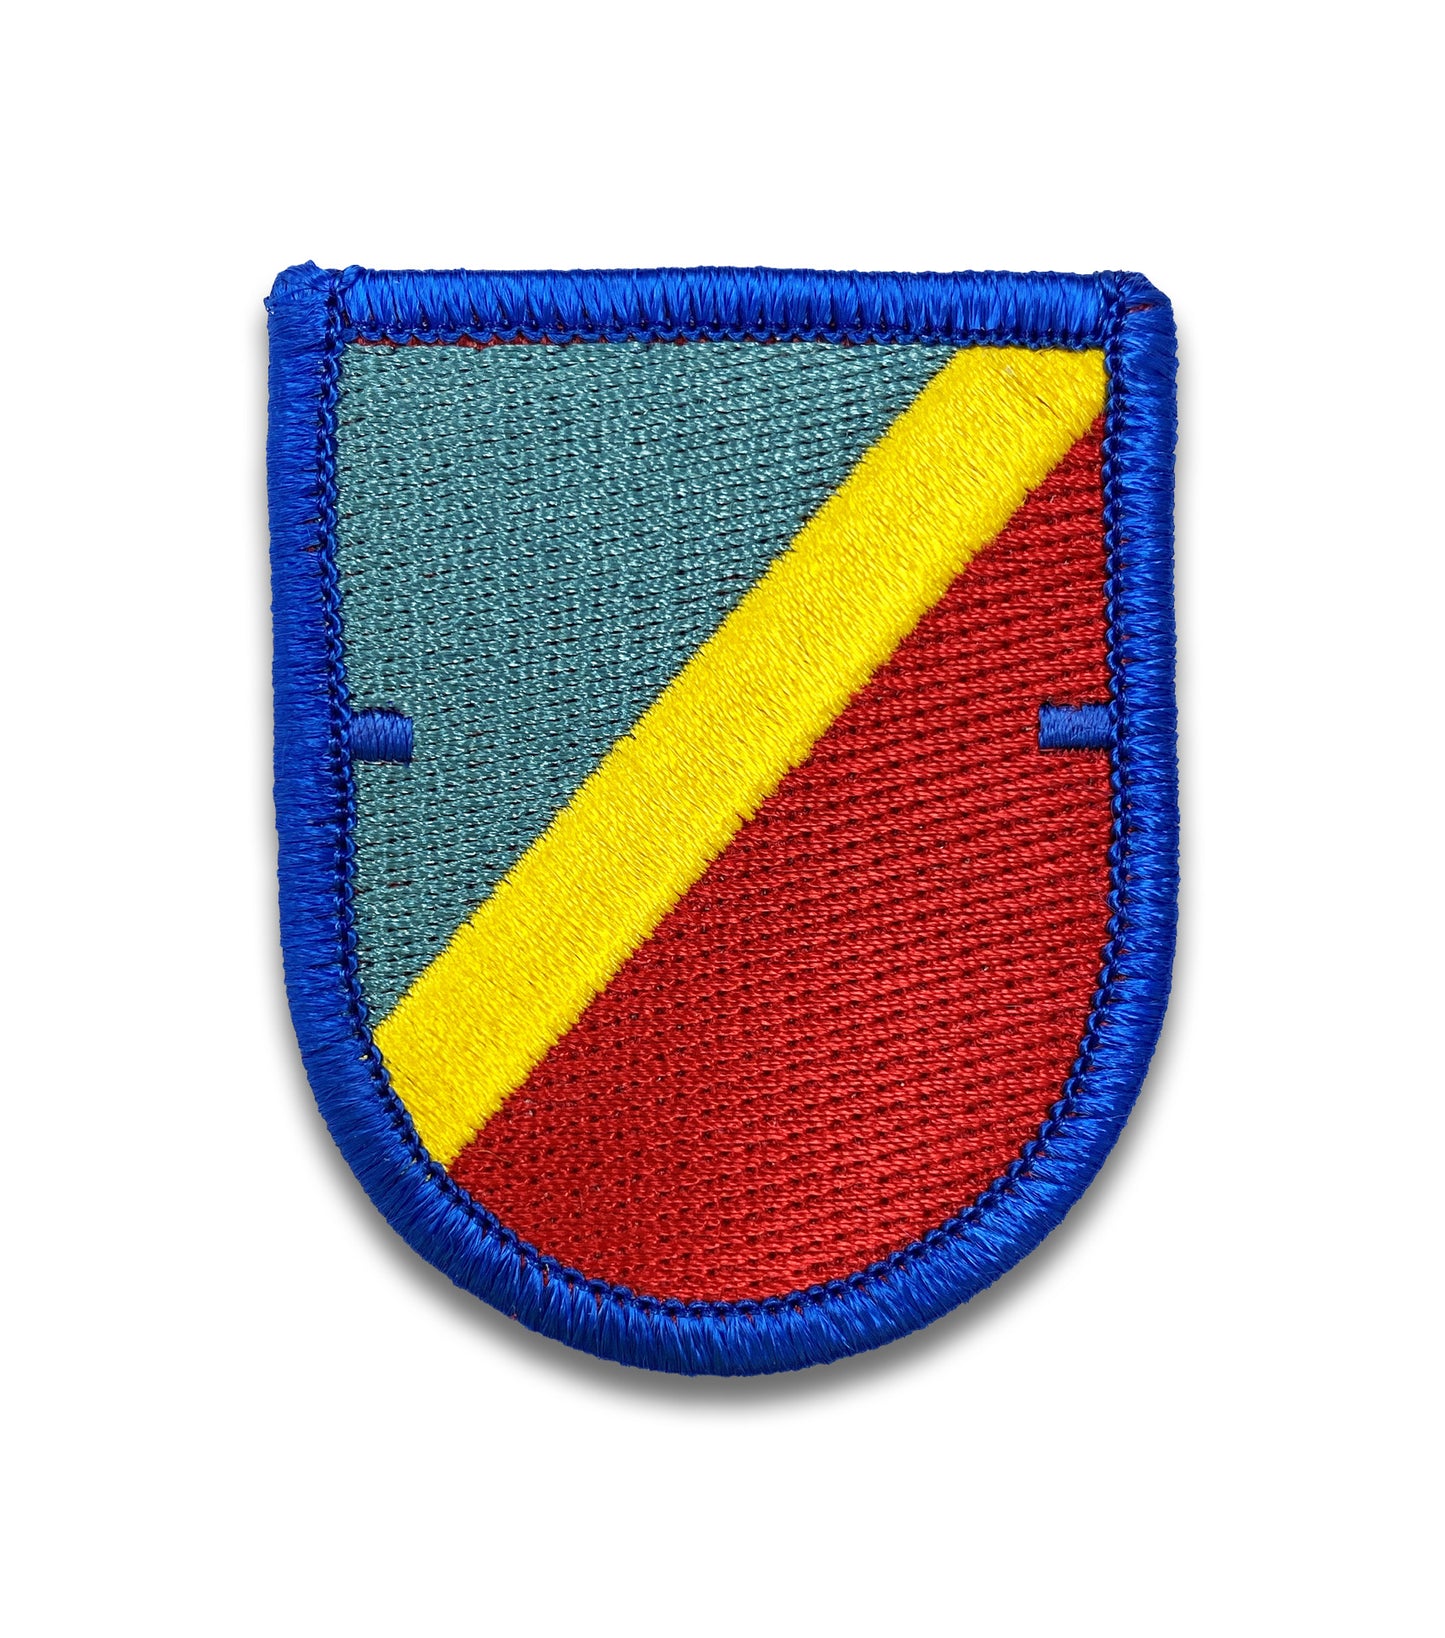 U.S. Army 82nd Aviation Brigade 1st Battalion Flash